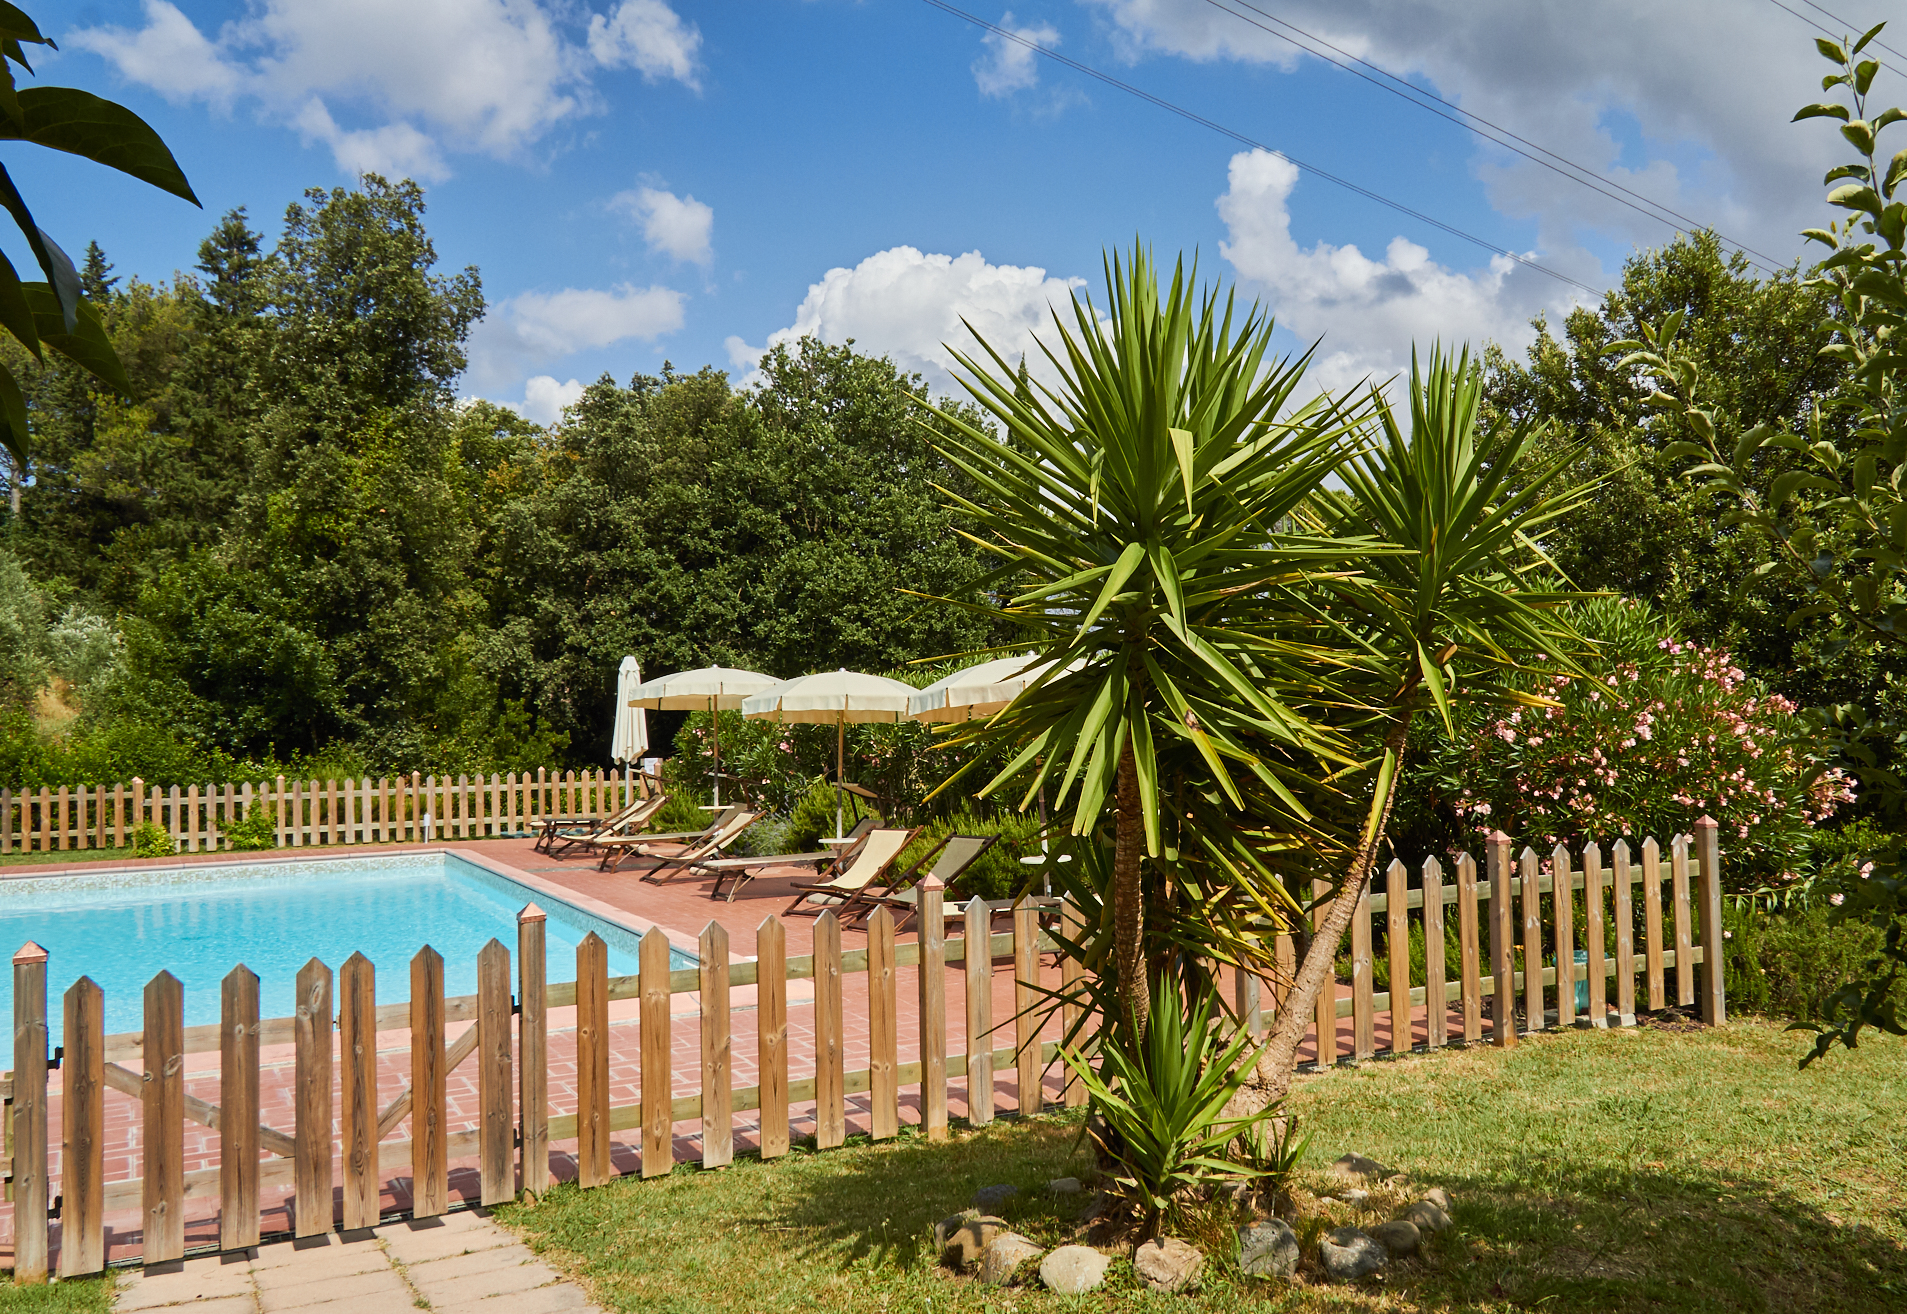 Appartamenti con piscina ideali per famiglie con bambini in vacanza in Toscana